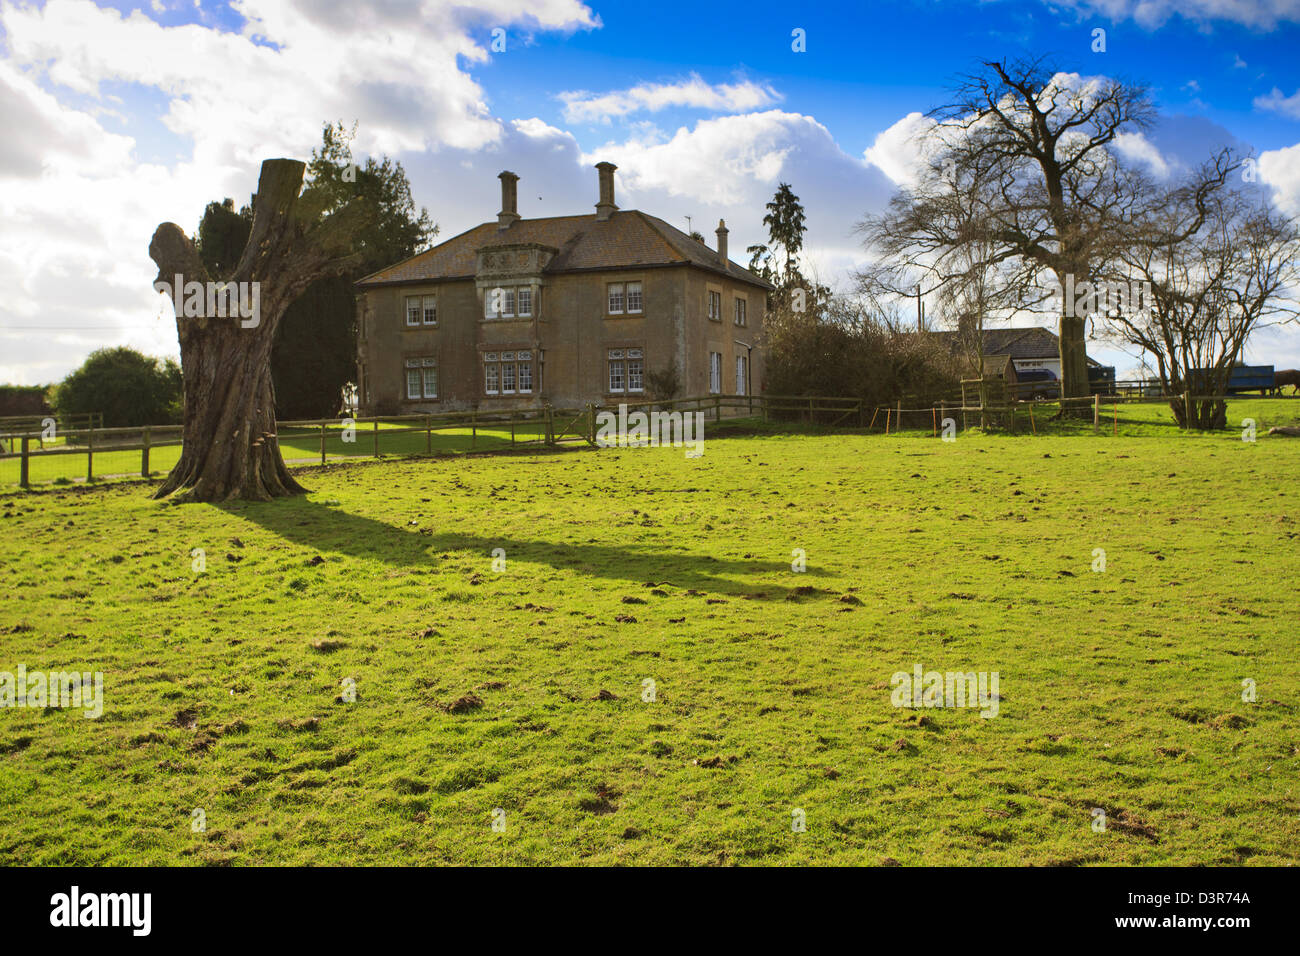 Grandi britannico tradizionale casa colonica con albero morto nella campagna vicino a Swindon Foto Stock